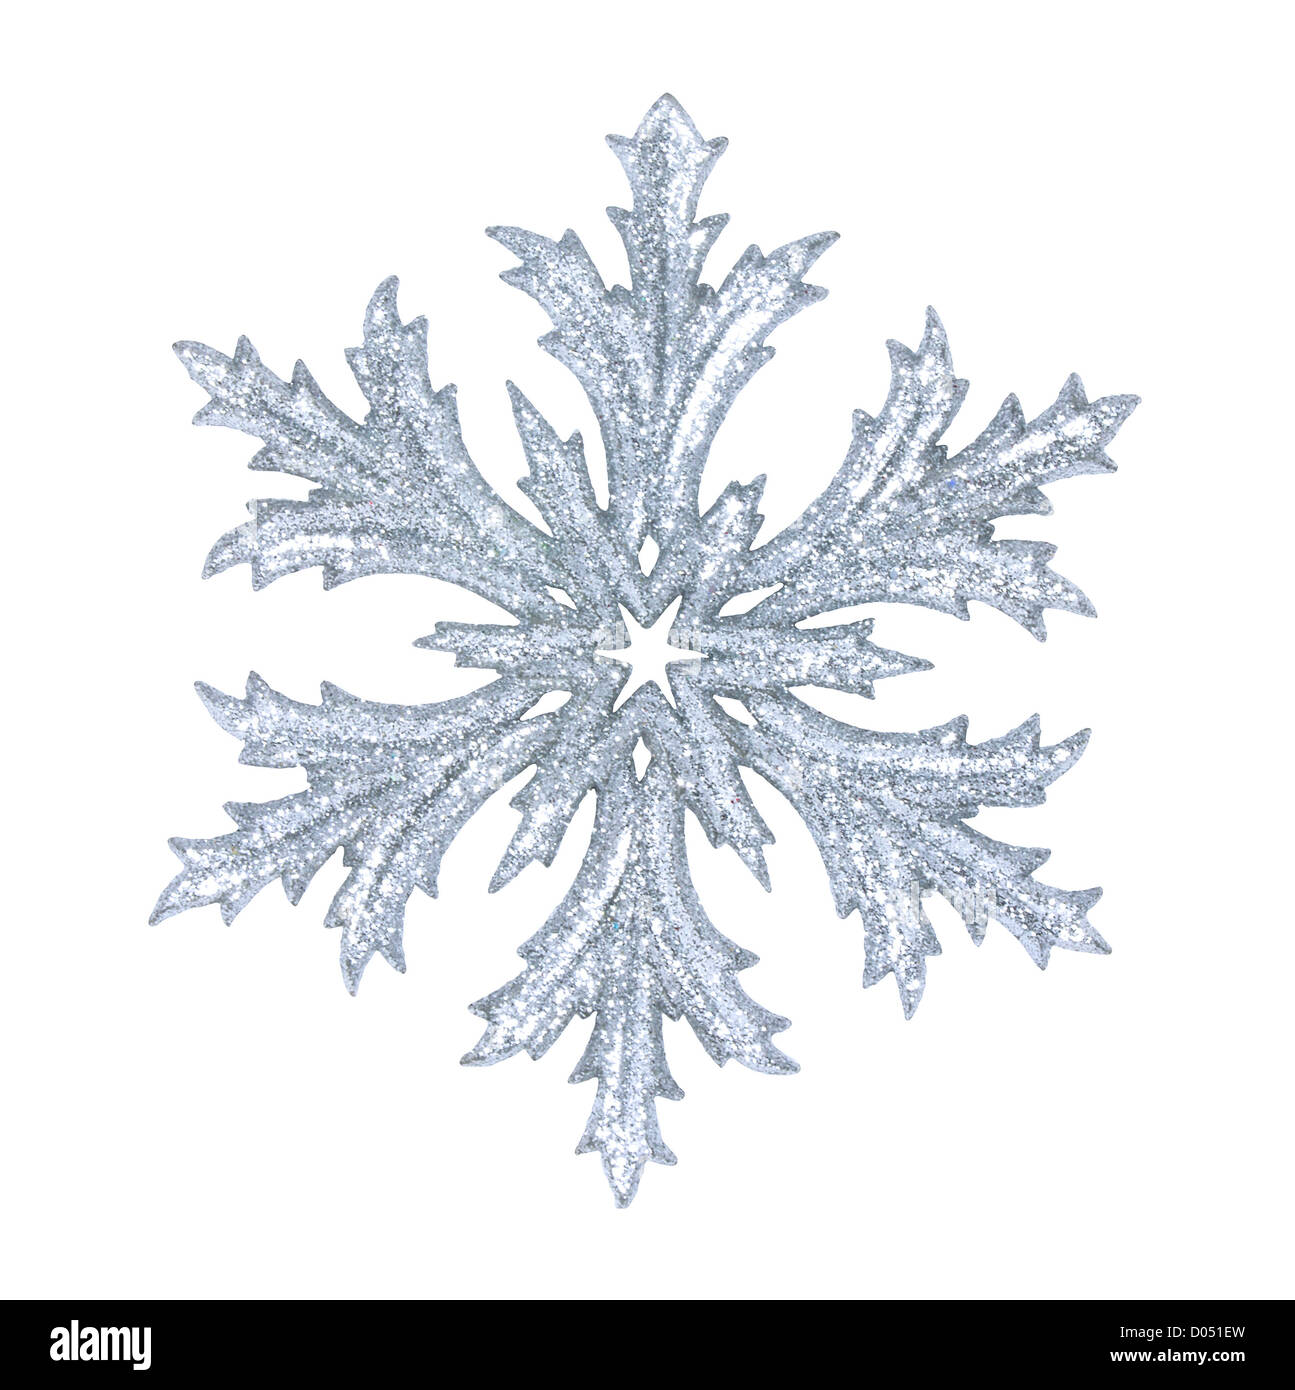 Shiny snowflake isolated on winter background Stock Photo